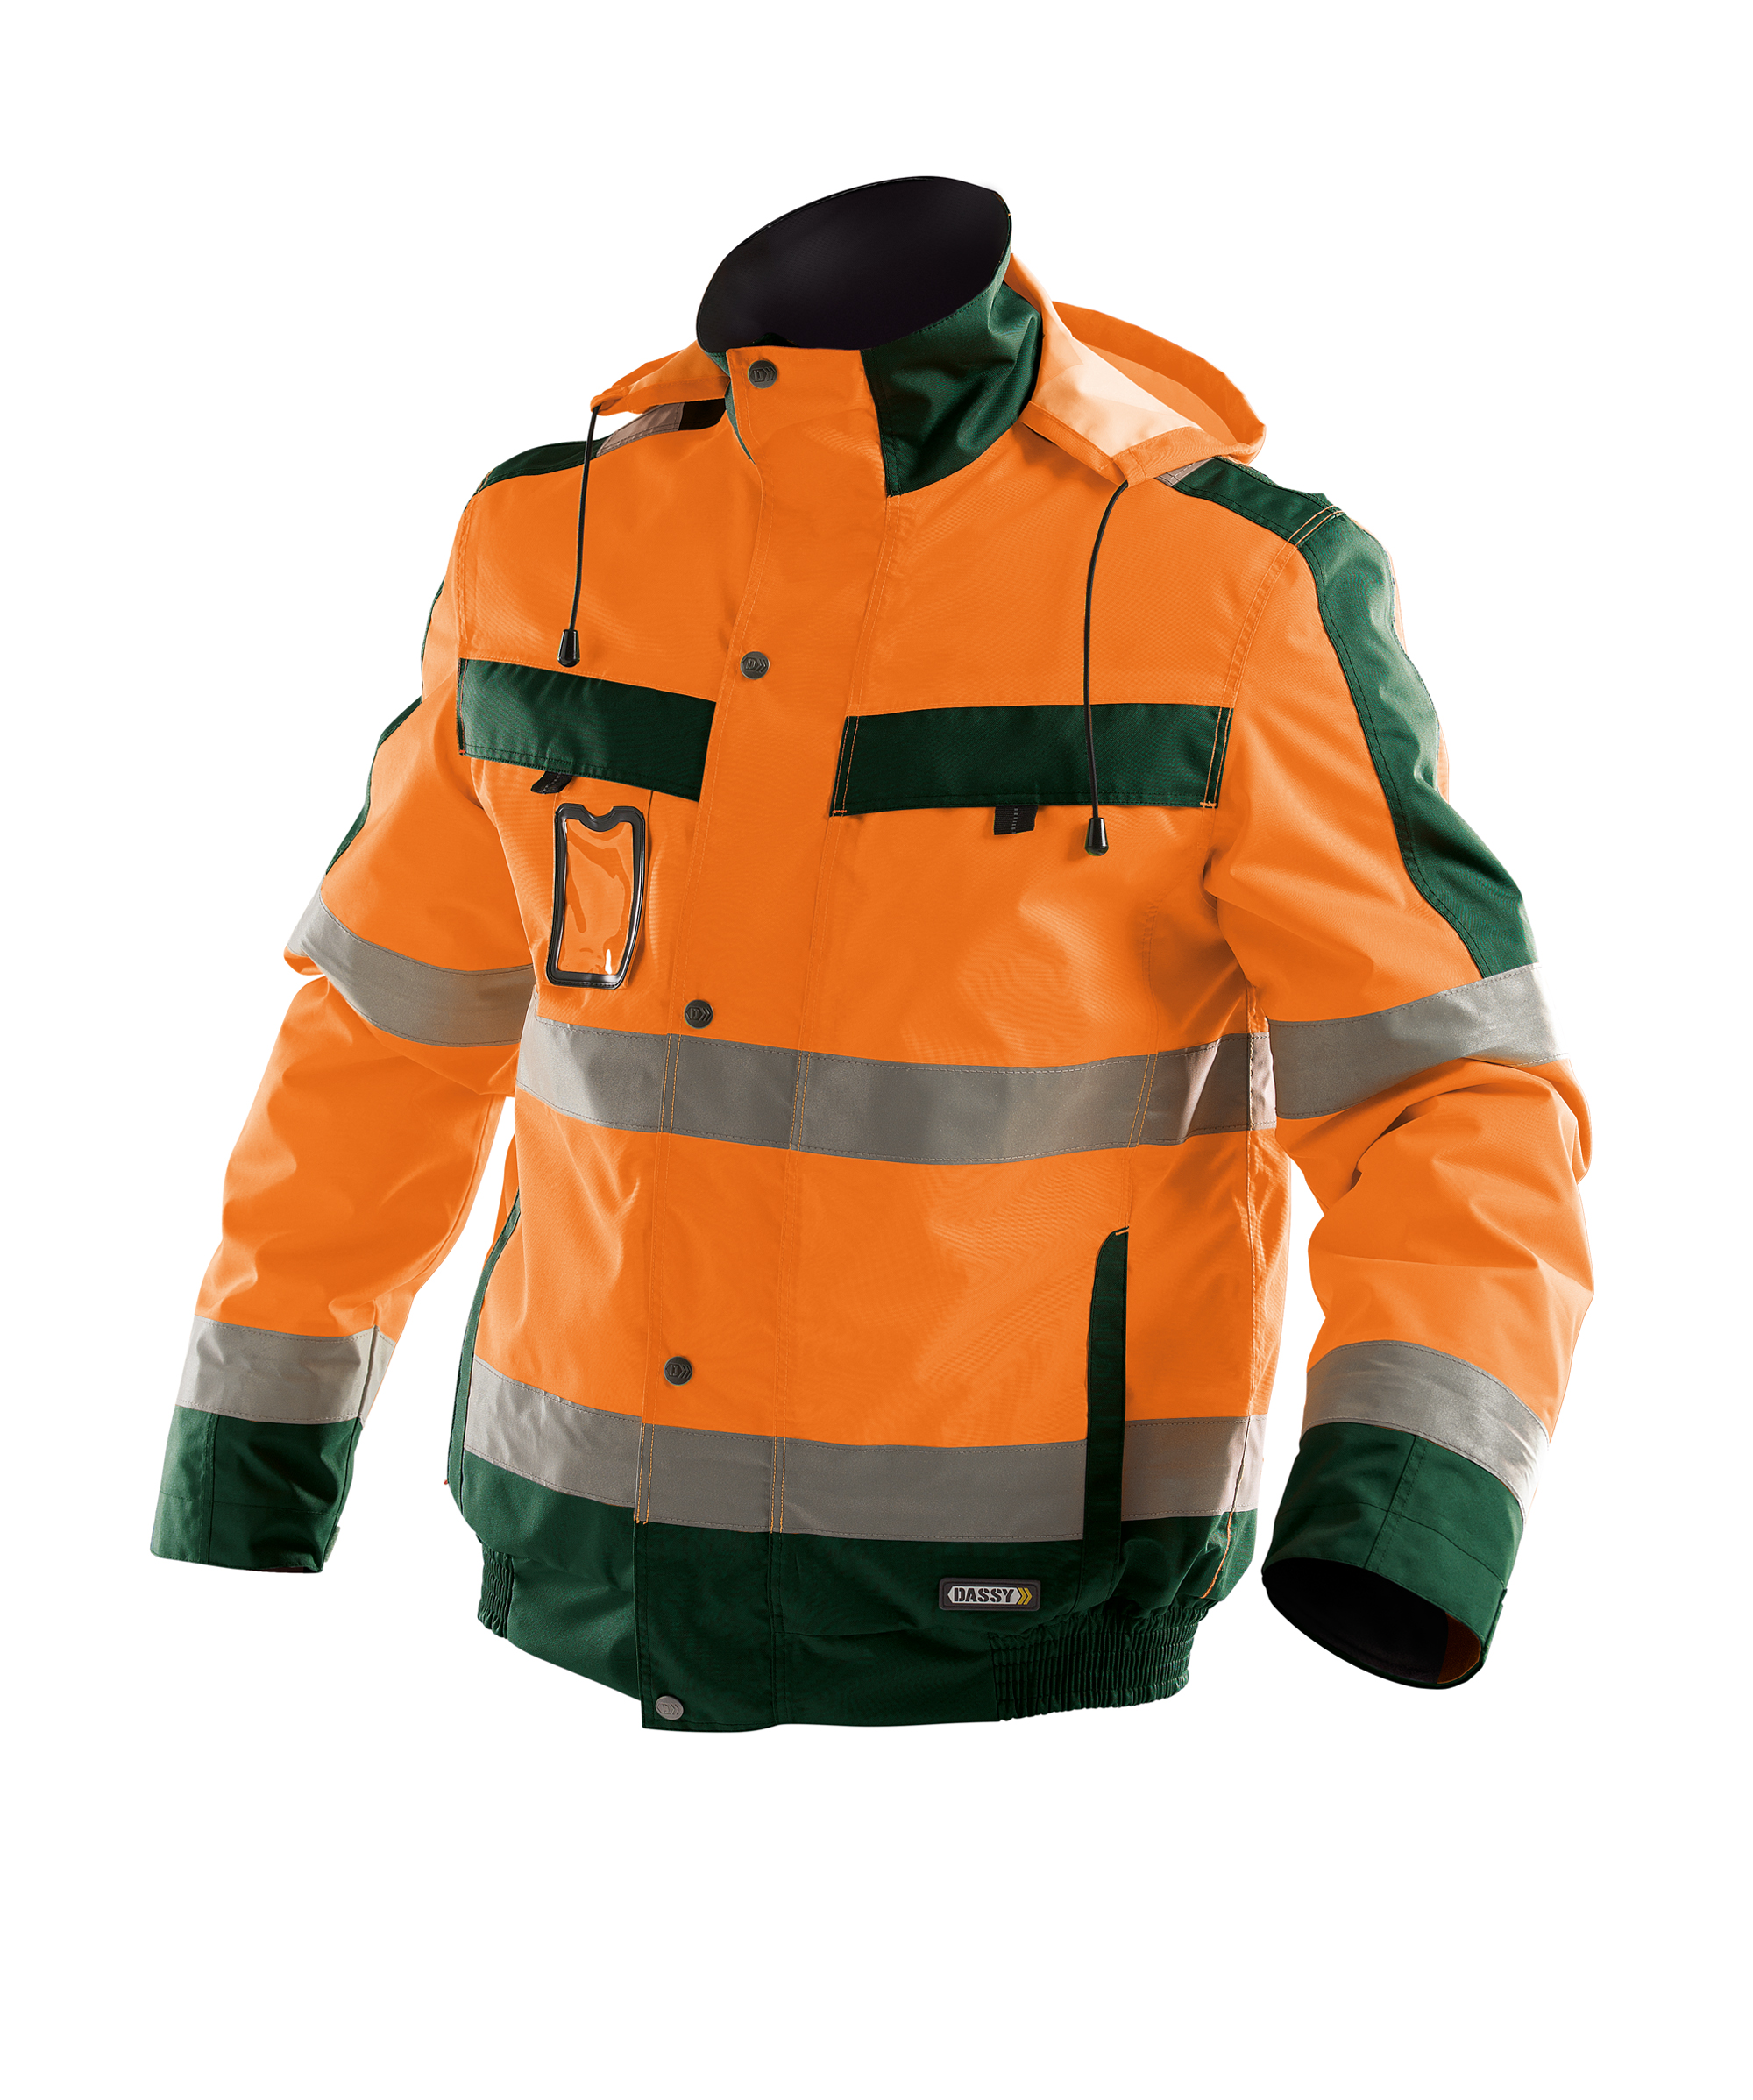 lima_high-visibility-winter-jacket_fluo-orange-bottle-green_front.jpg